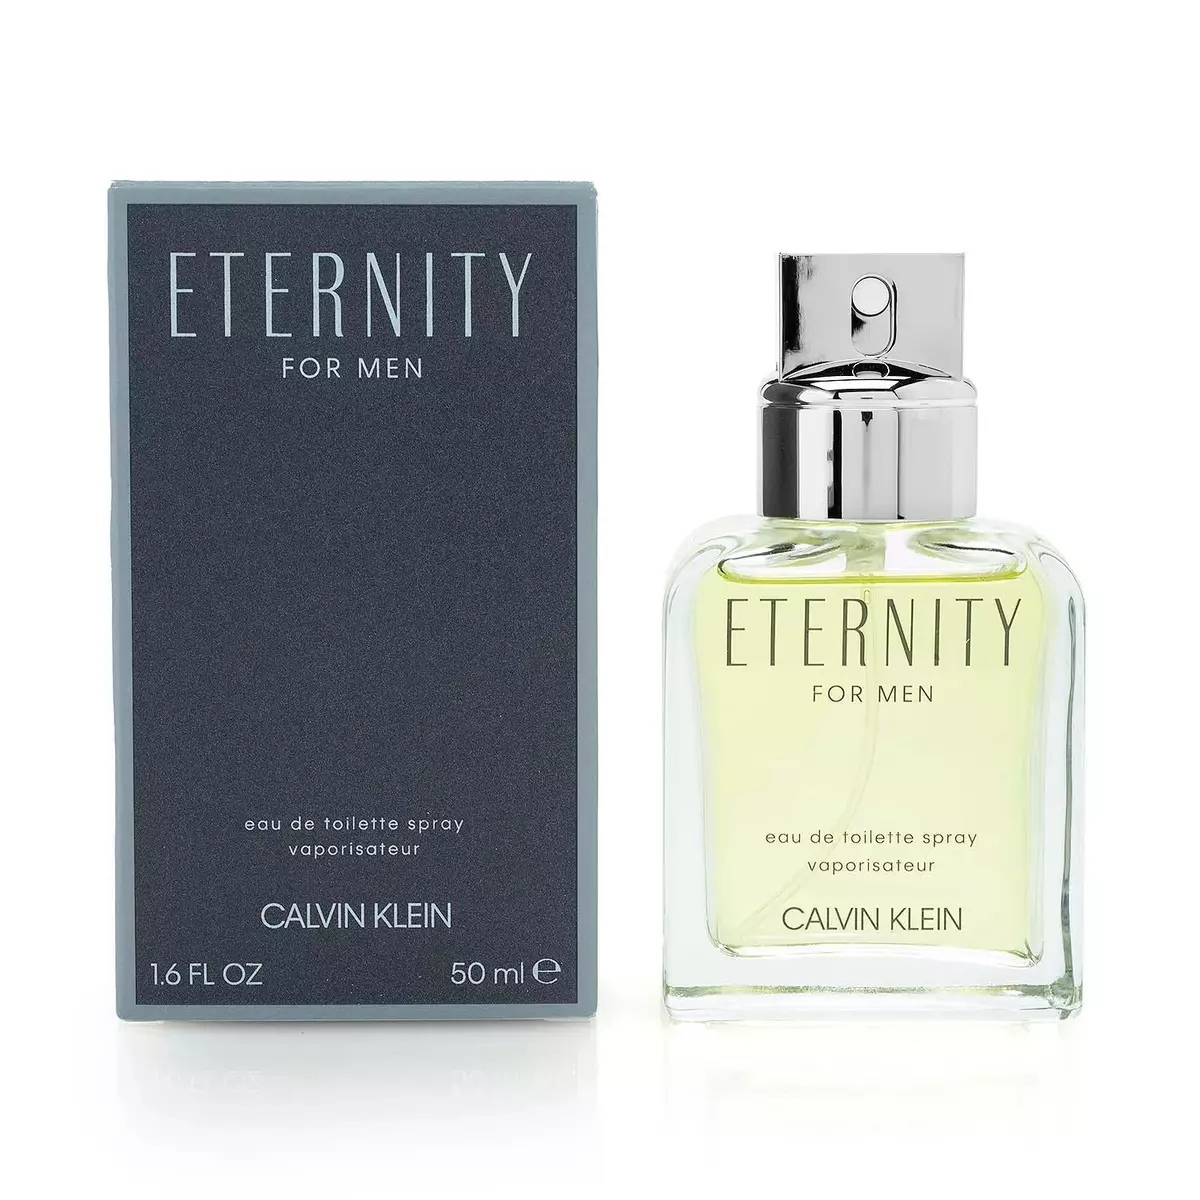 Туалетная вода мужская Calvin Klein Eternity For Men edt 50 мл eternity aqua туалетная вода 100мл